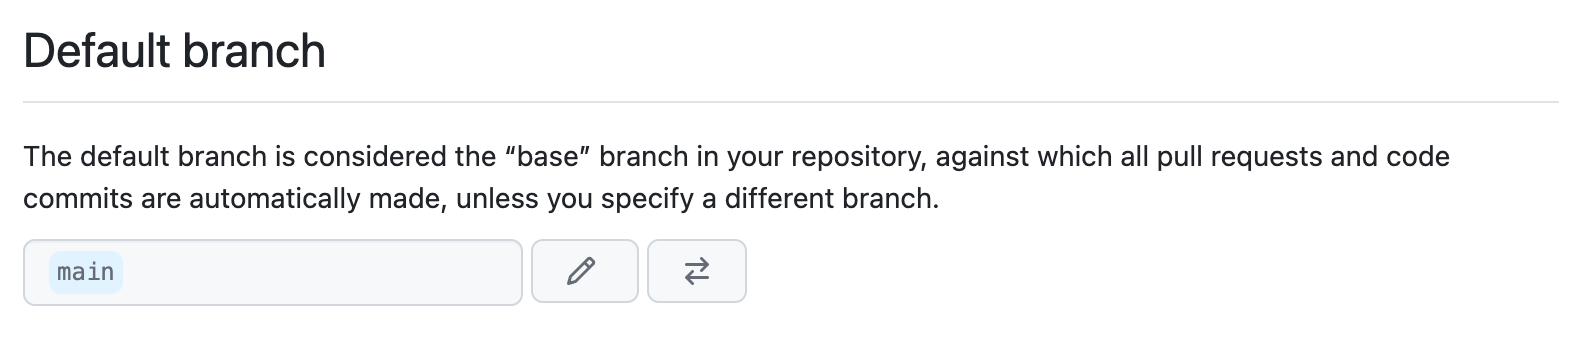 Screenshot of default branch